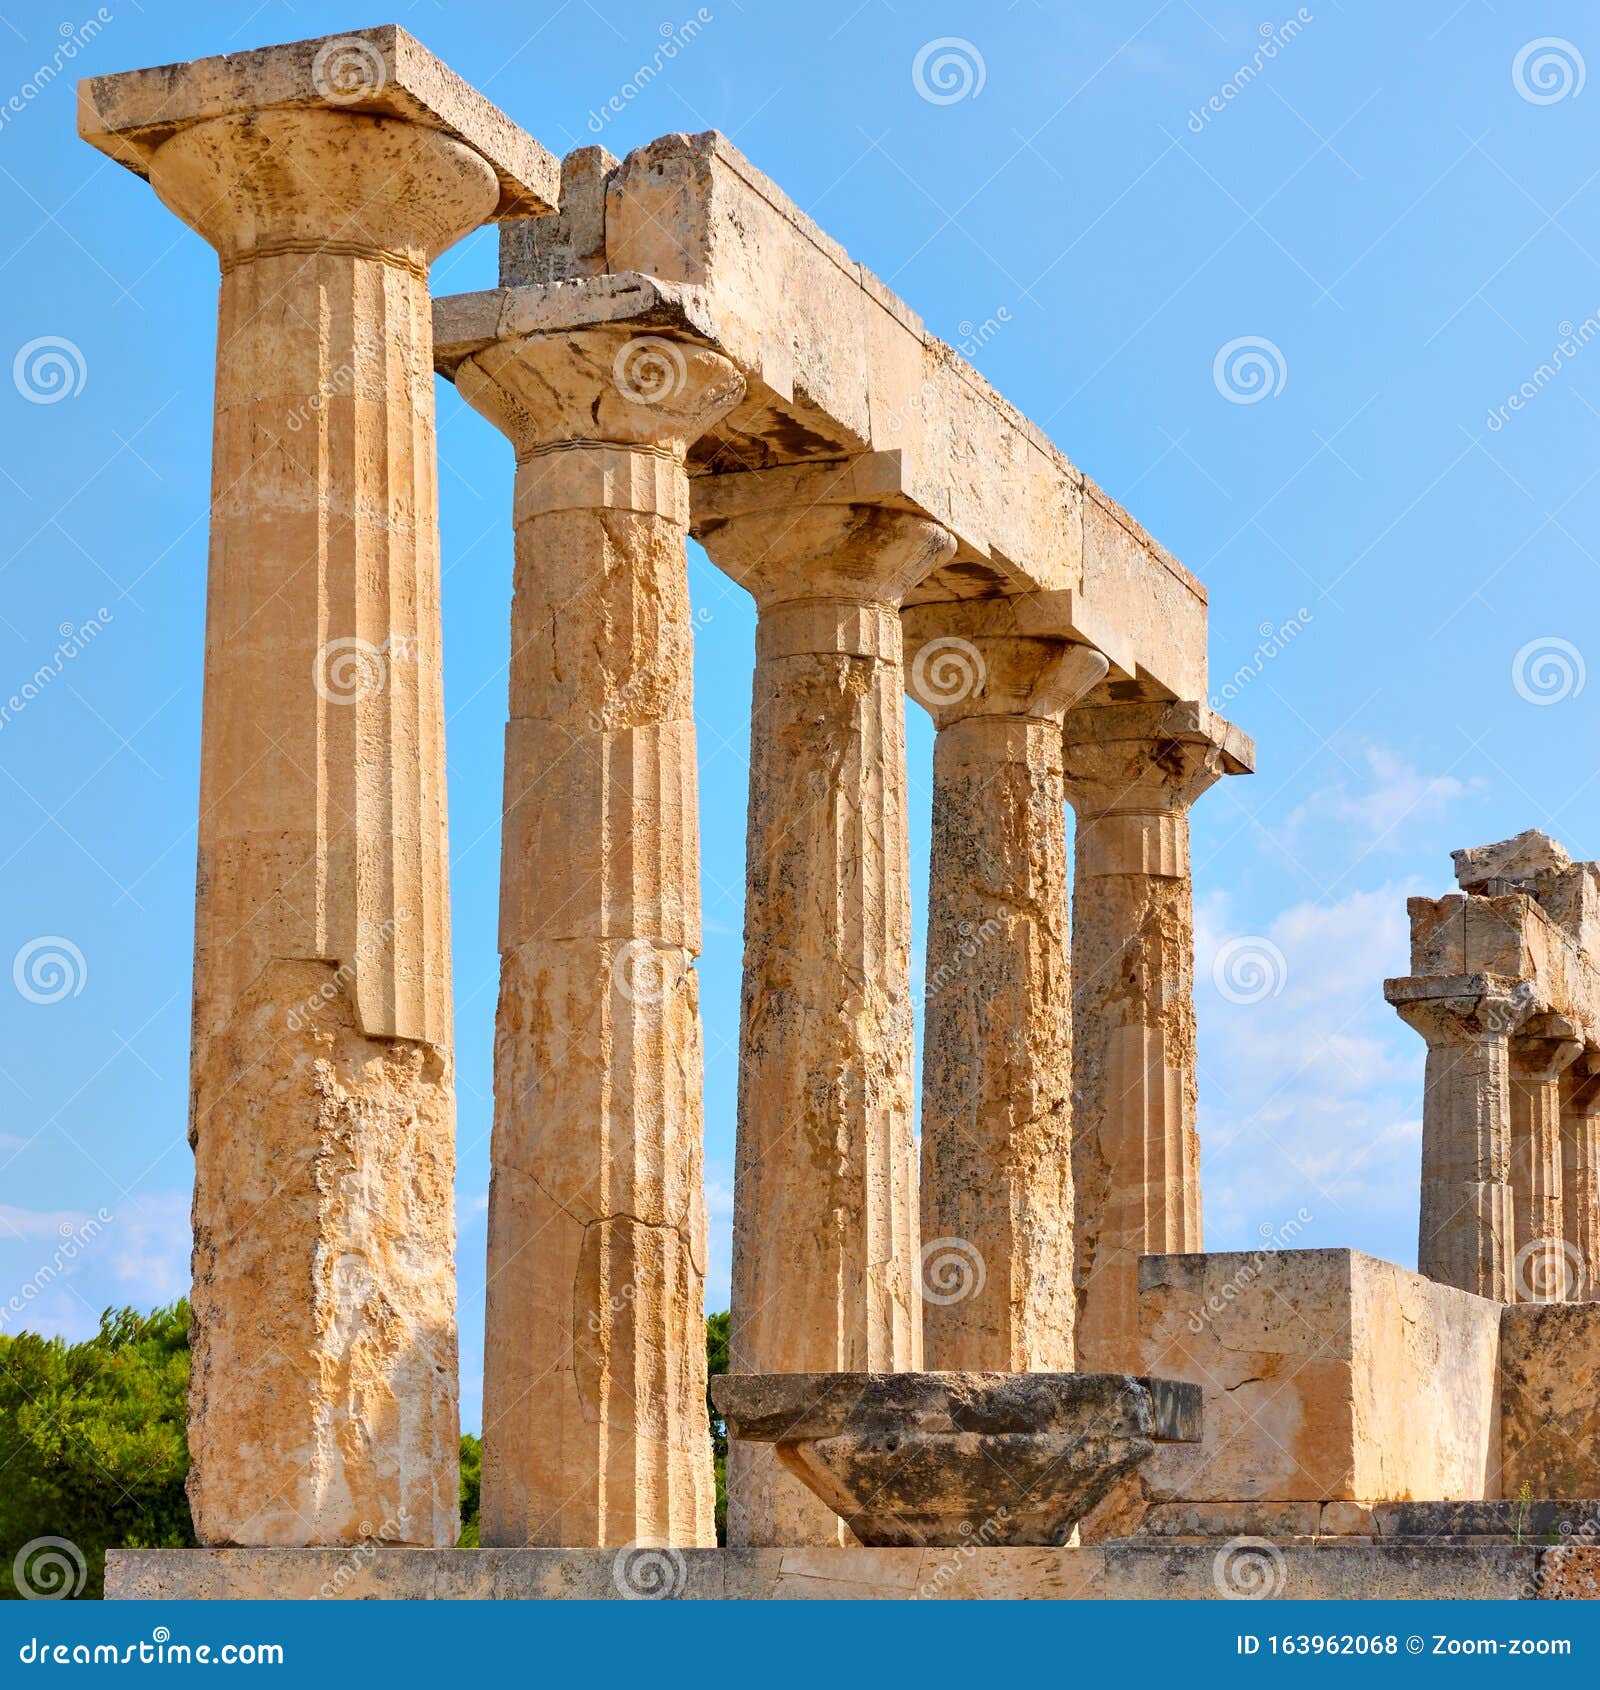 columns of temple of aphaea in aegina